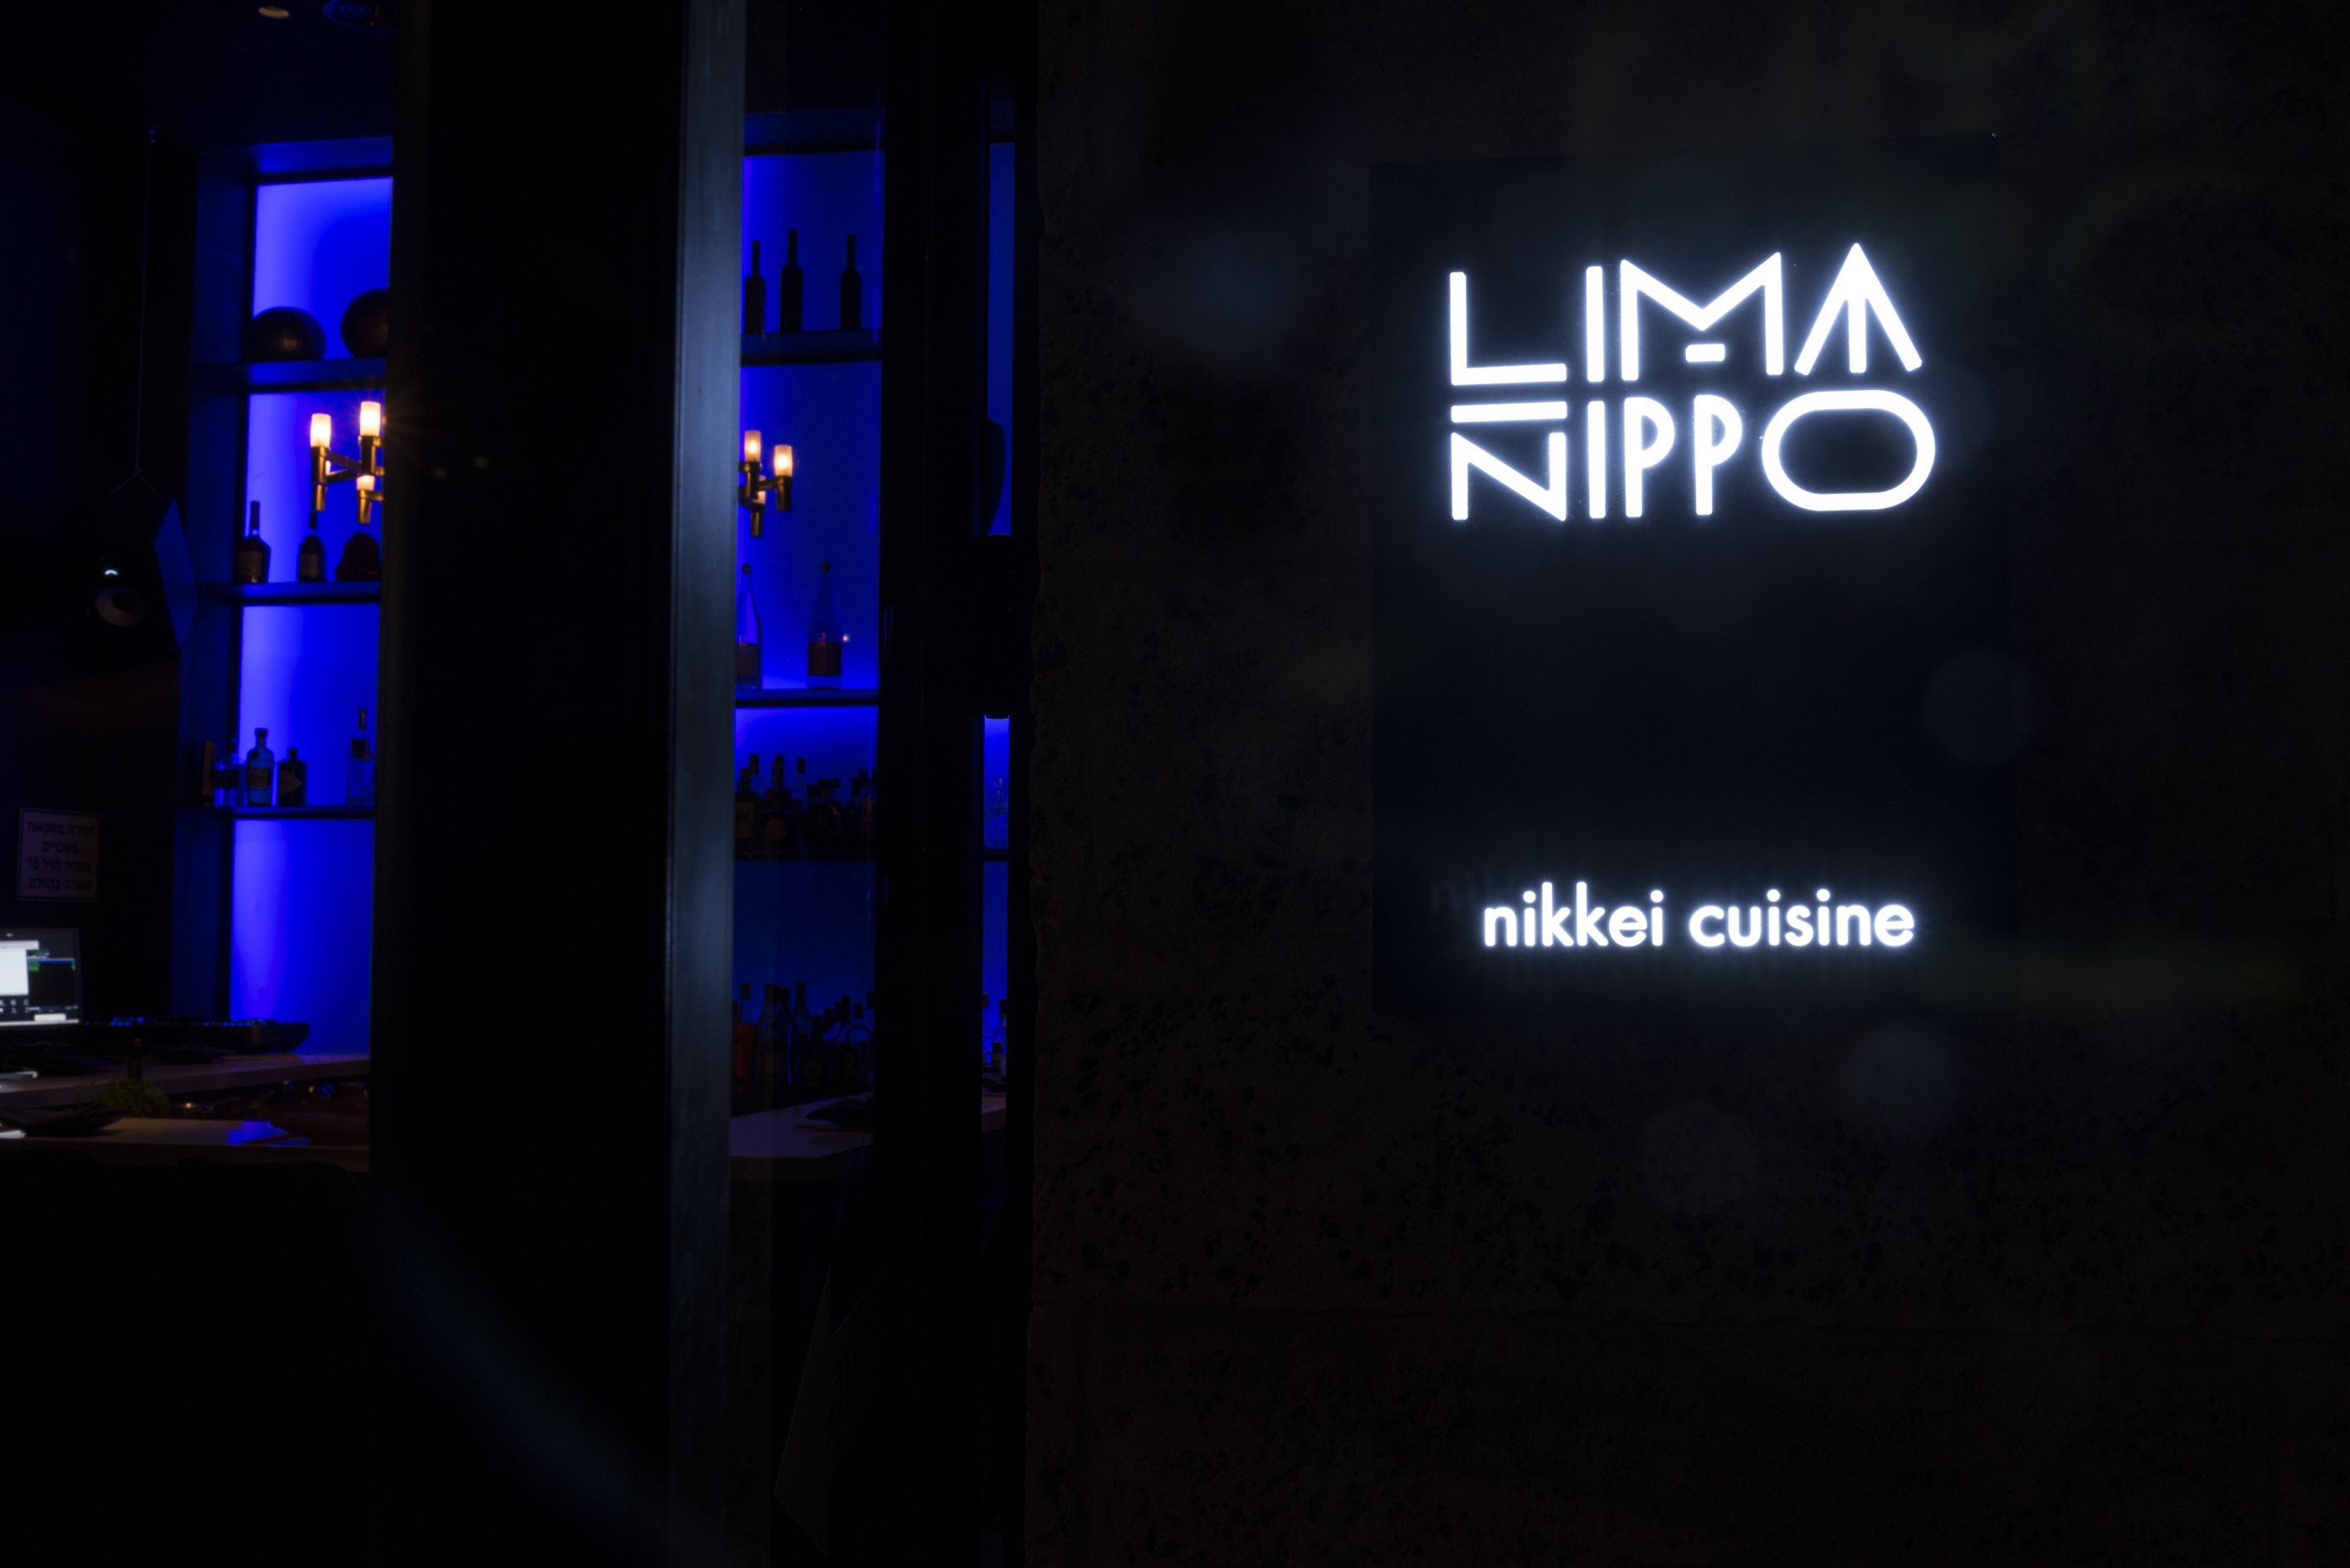 LIMA NIPPO-новый ресторан загадочной кухни “никкей”